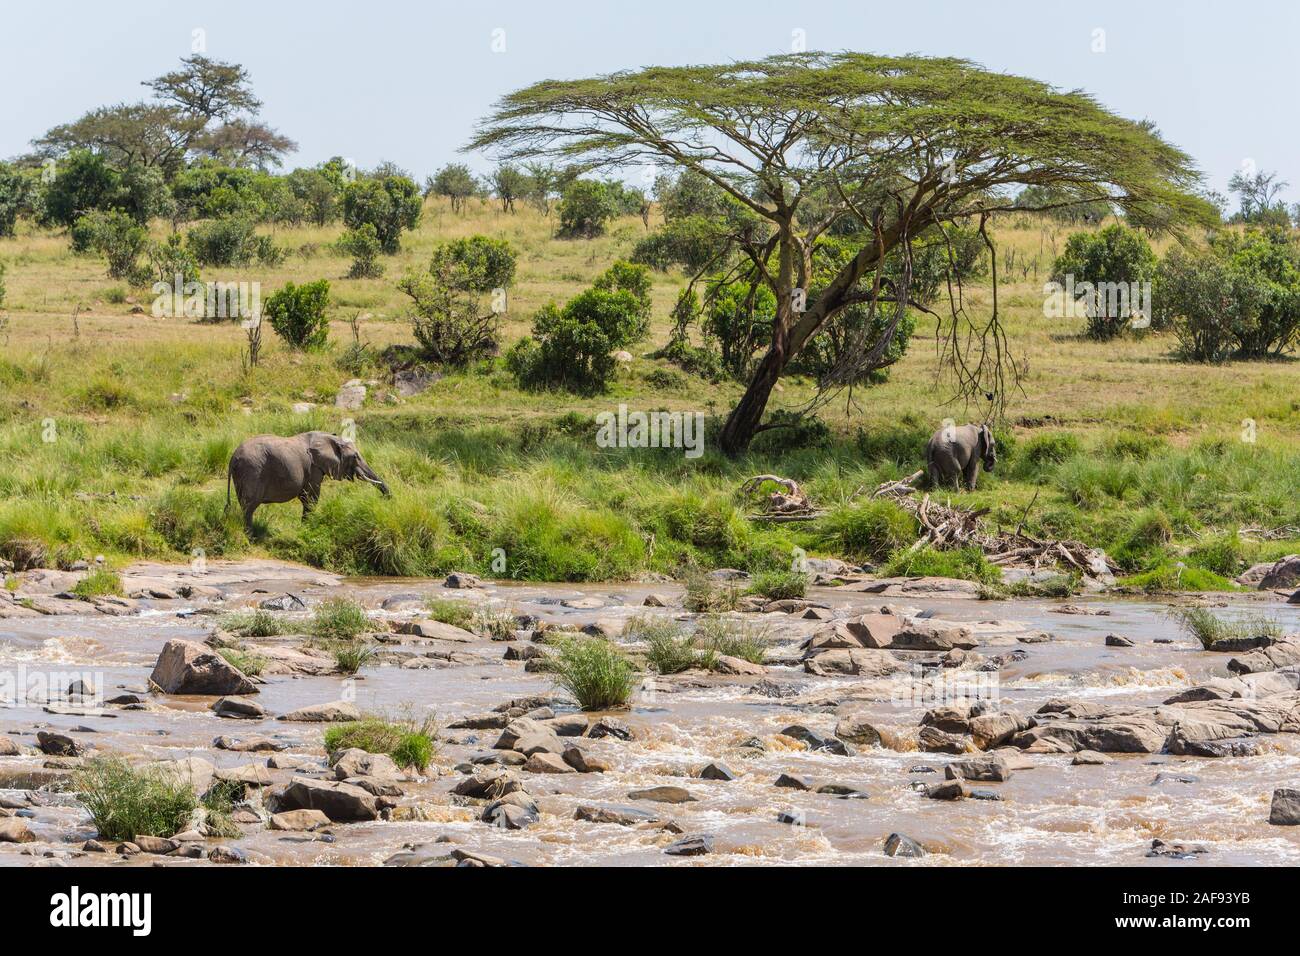 La República Unida de Tanzanía. Serengeti. Exploración de elefantes en las orillas del río Mara. Foto de stock